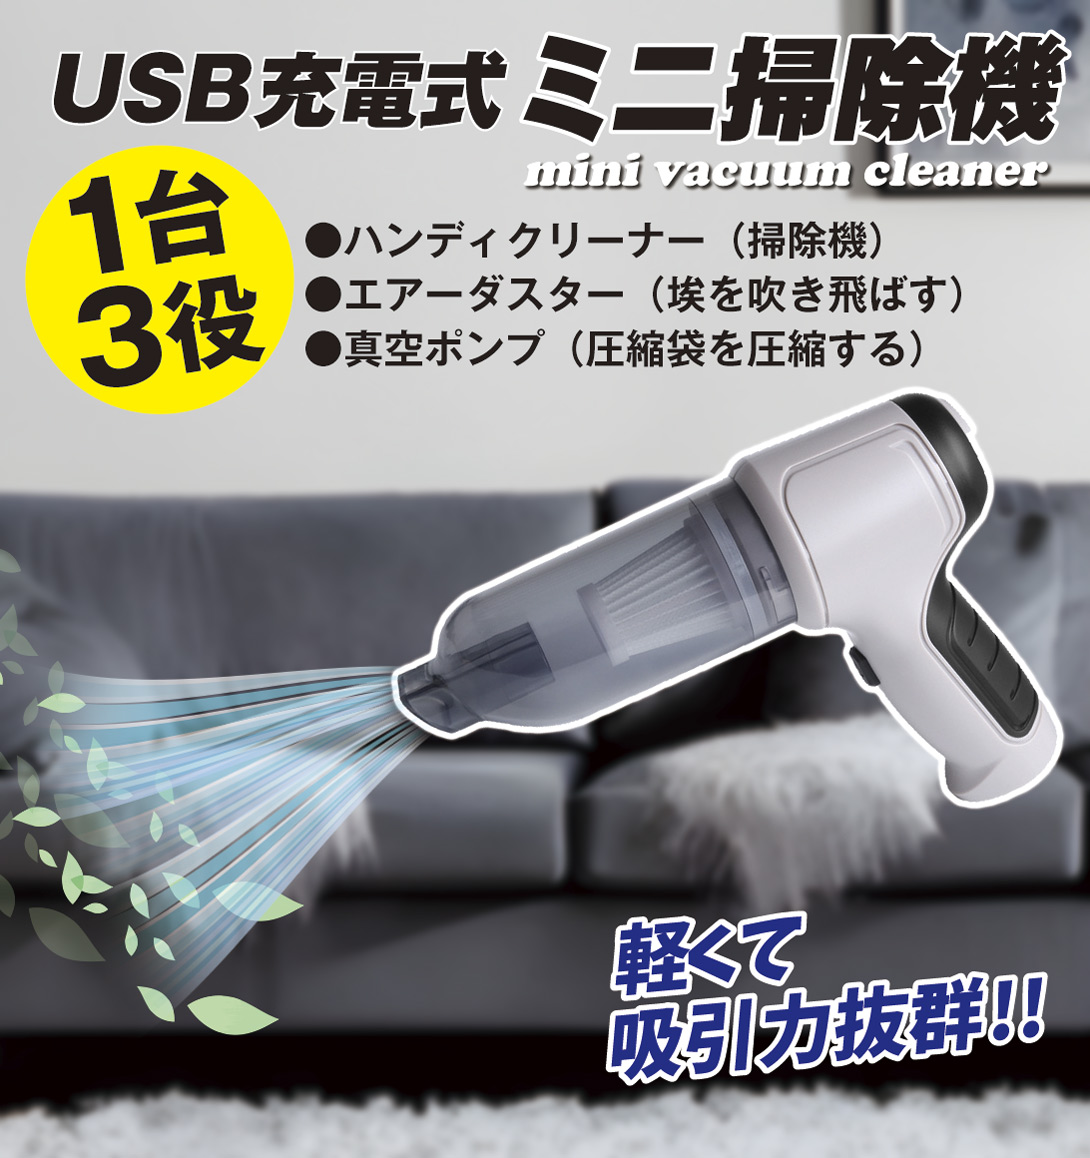 USB充電式ミニ掃除機 ハンドヘルドタイプ コンパクトサイズ